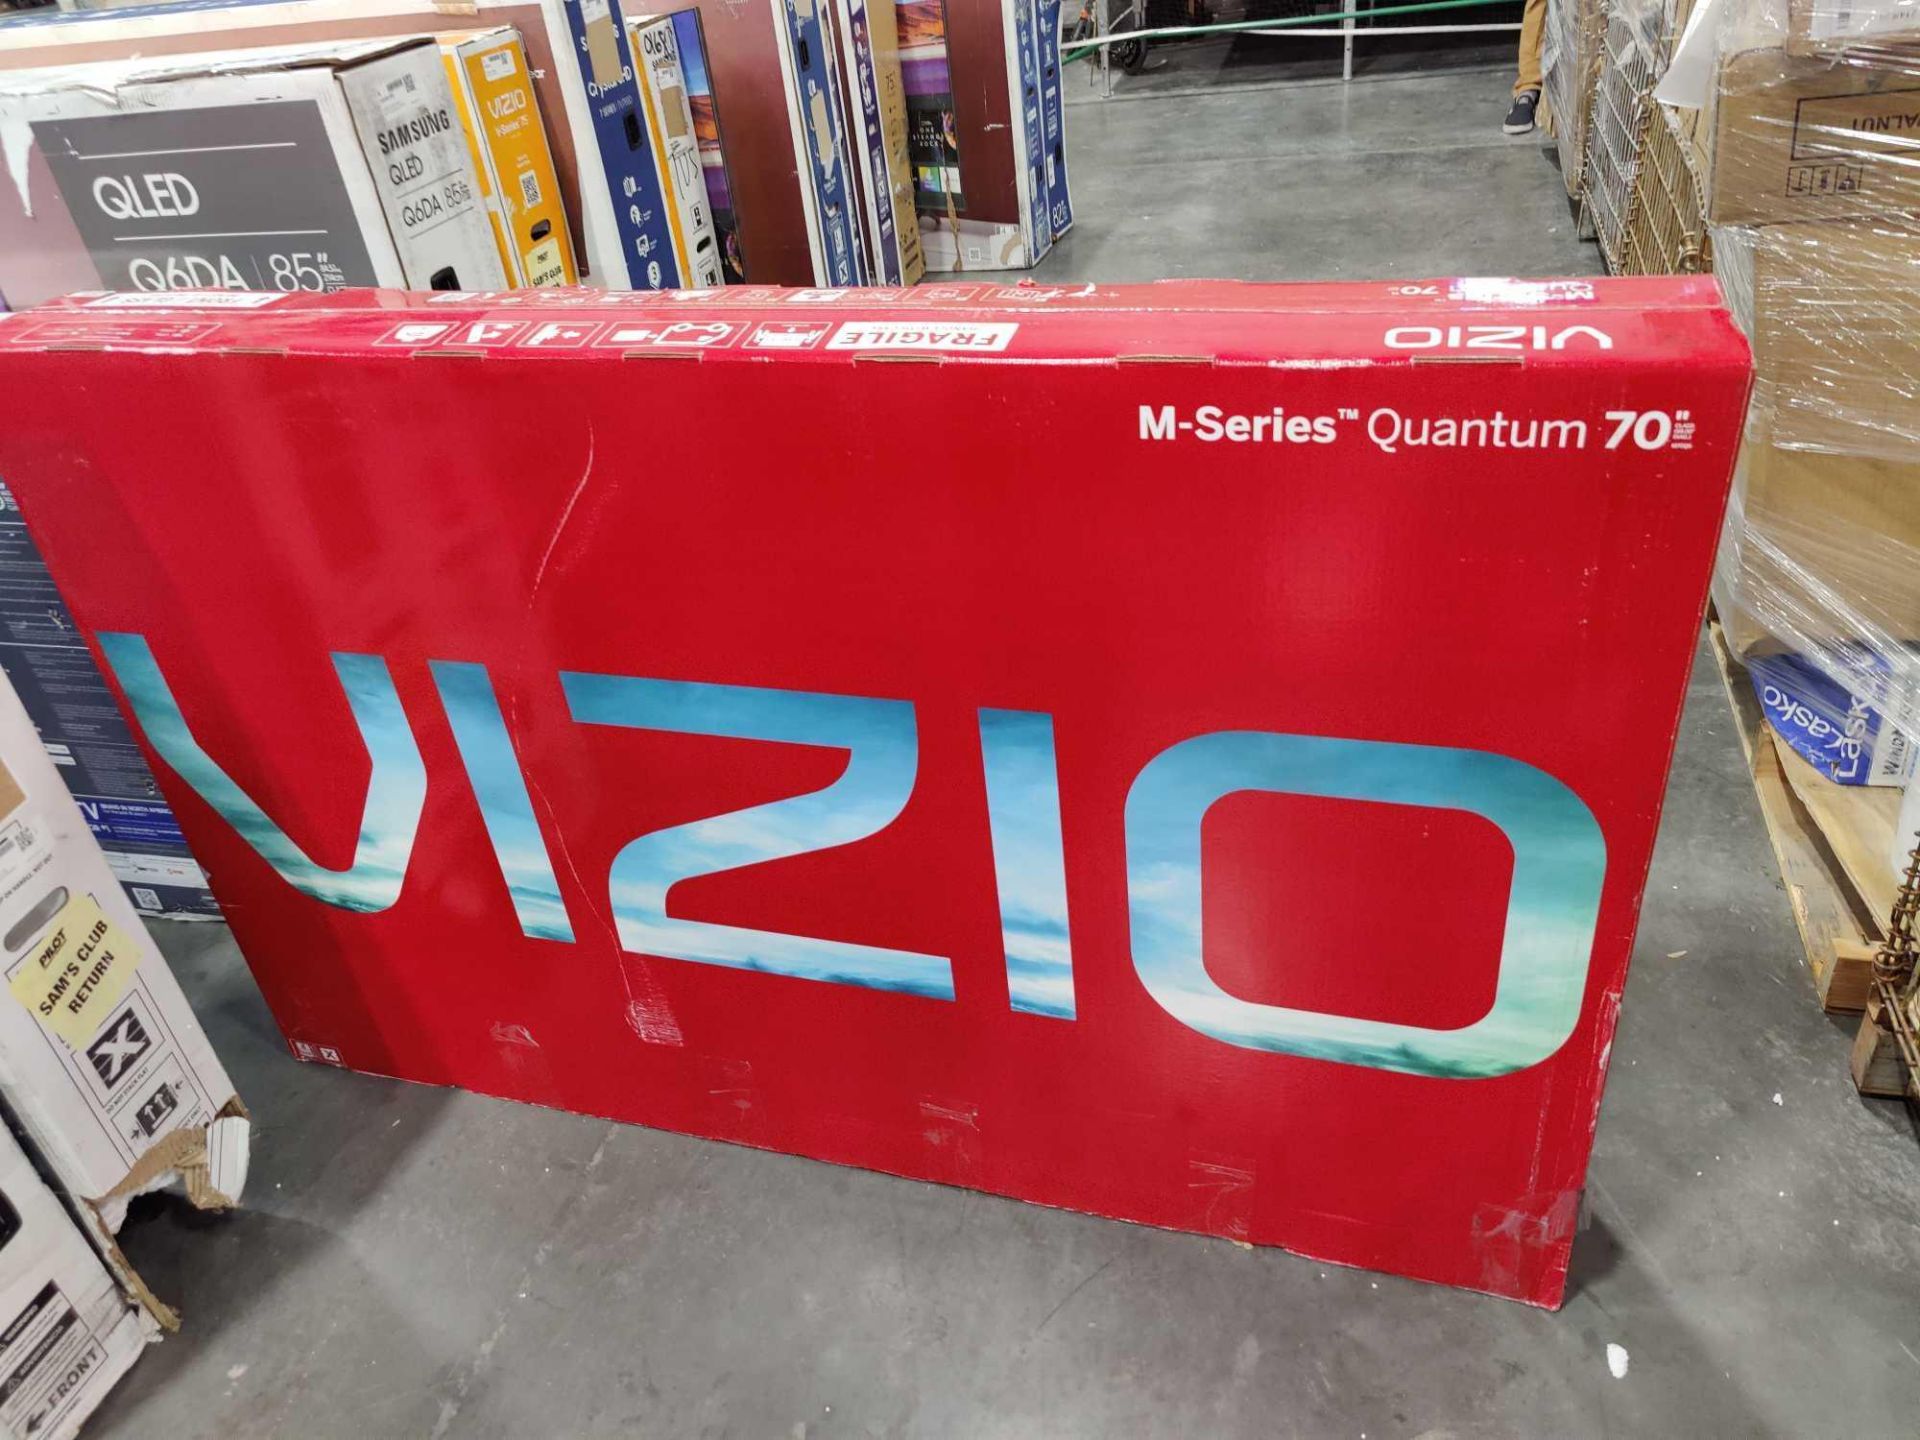 Vizio M Series Quantum 70" - Image 3 of 3